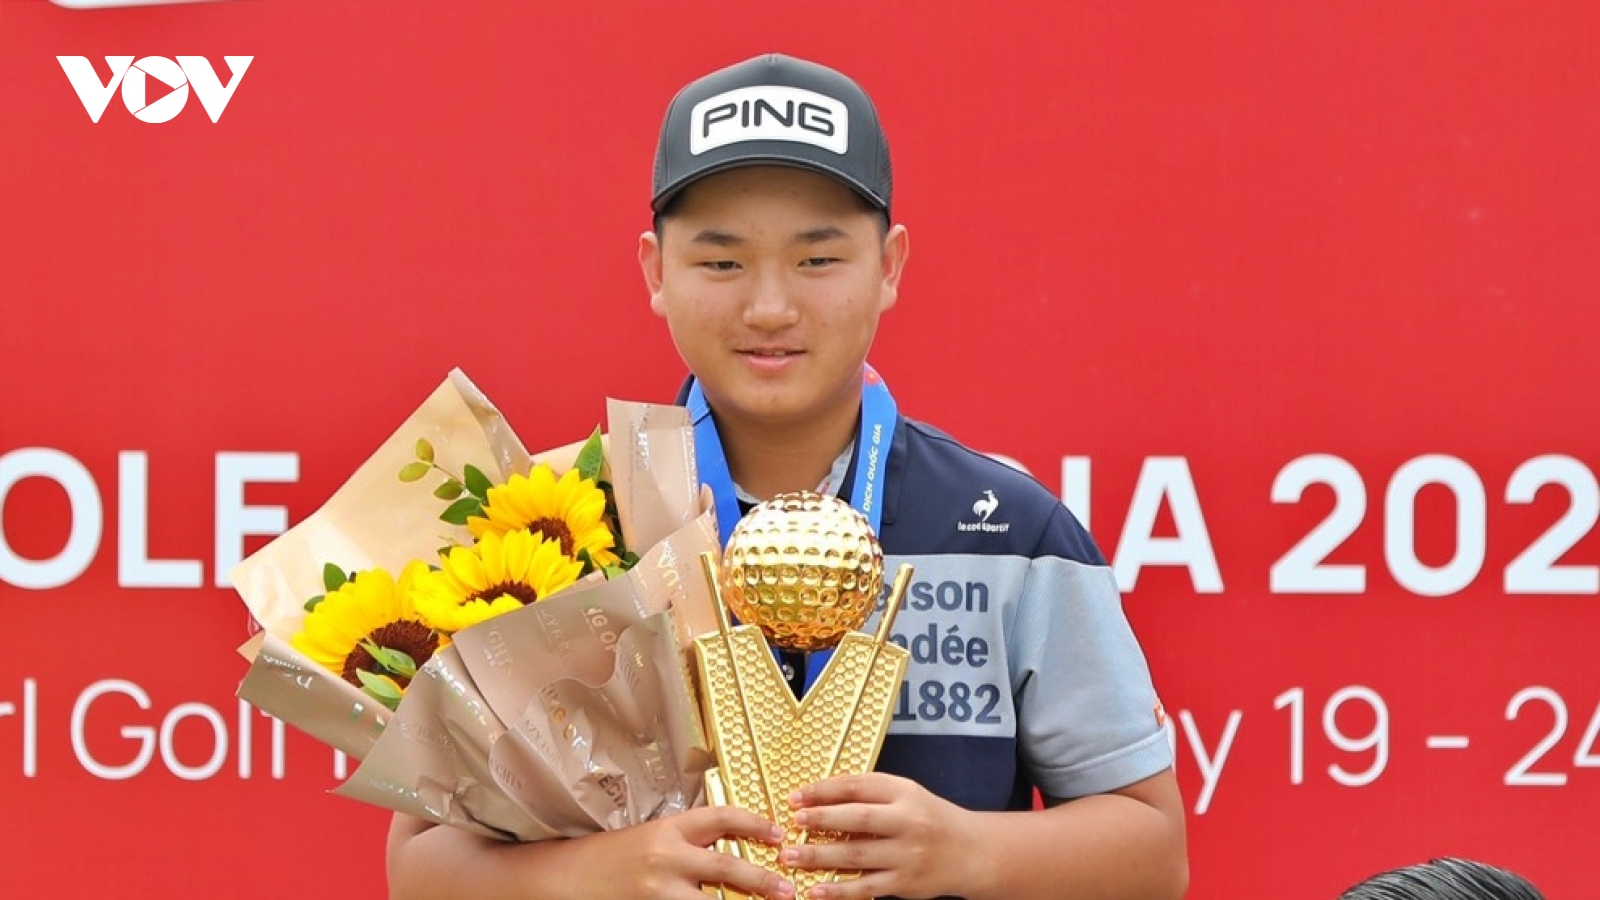 Song “Minh” đăng quang Giải Vô địch Golf Quốc gia 2022 – Cúp VinFast với điểm số kỷ lục